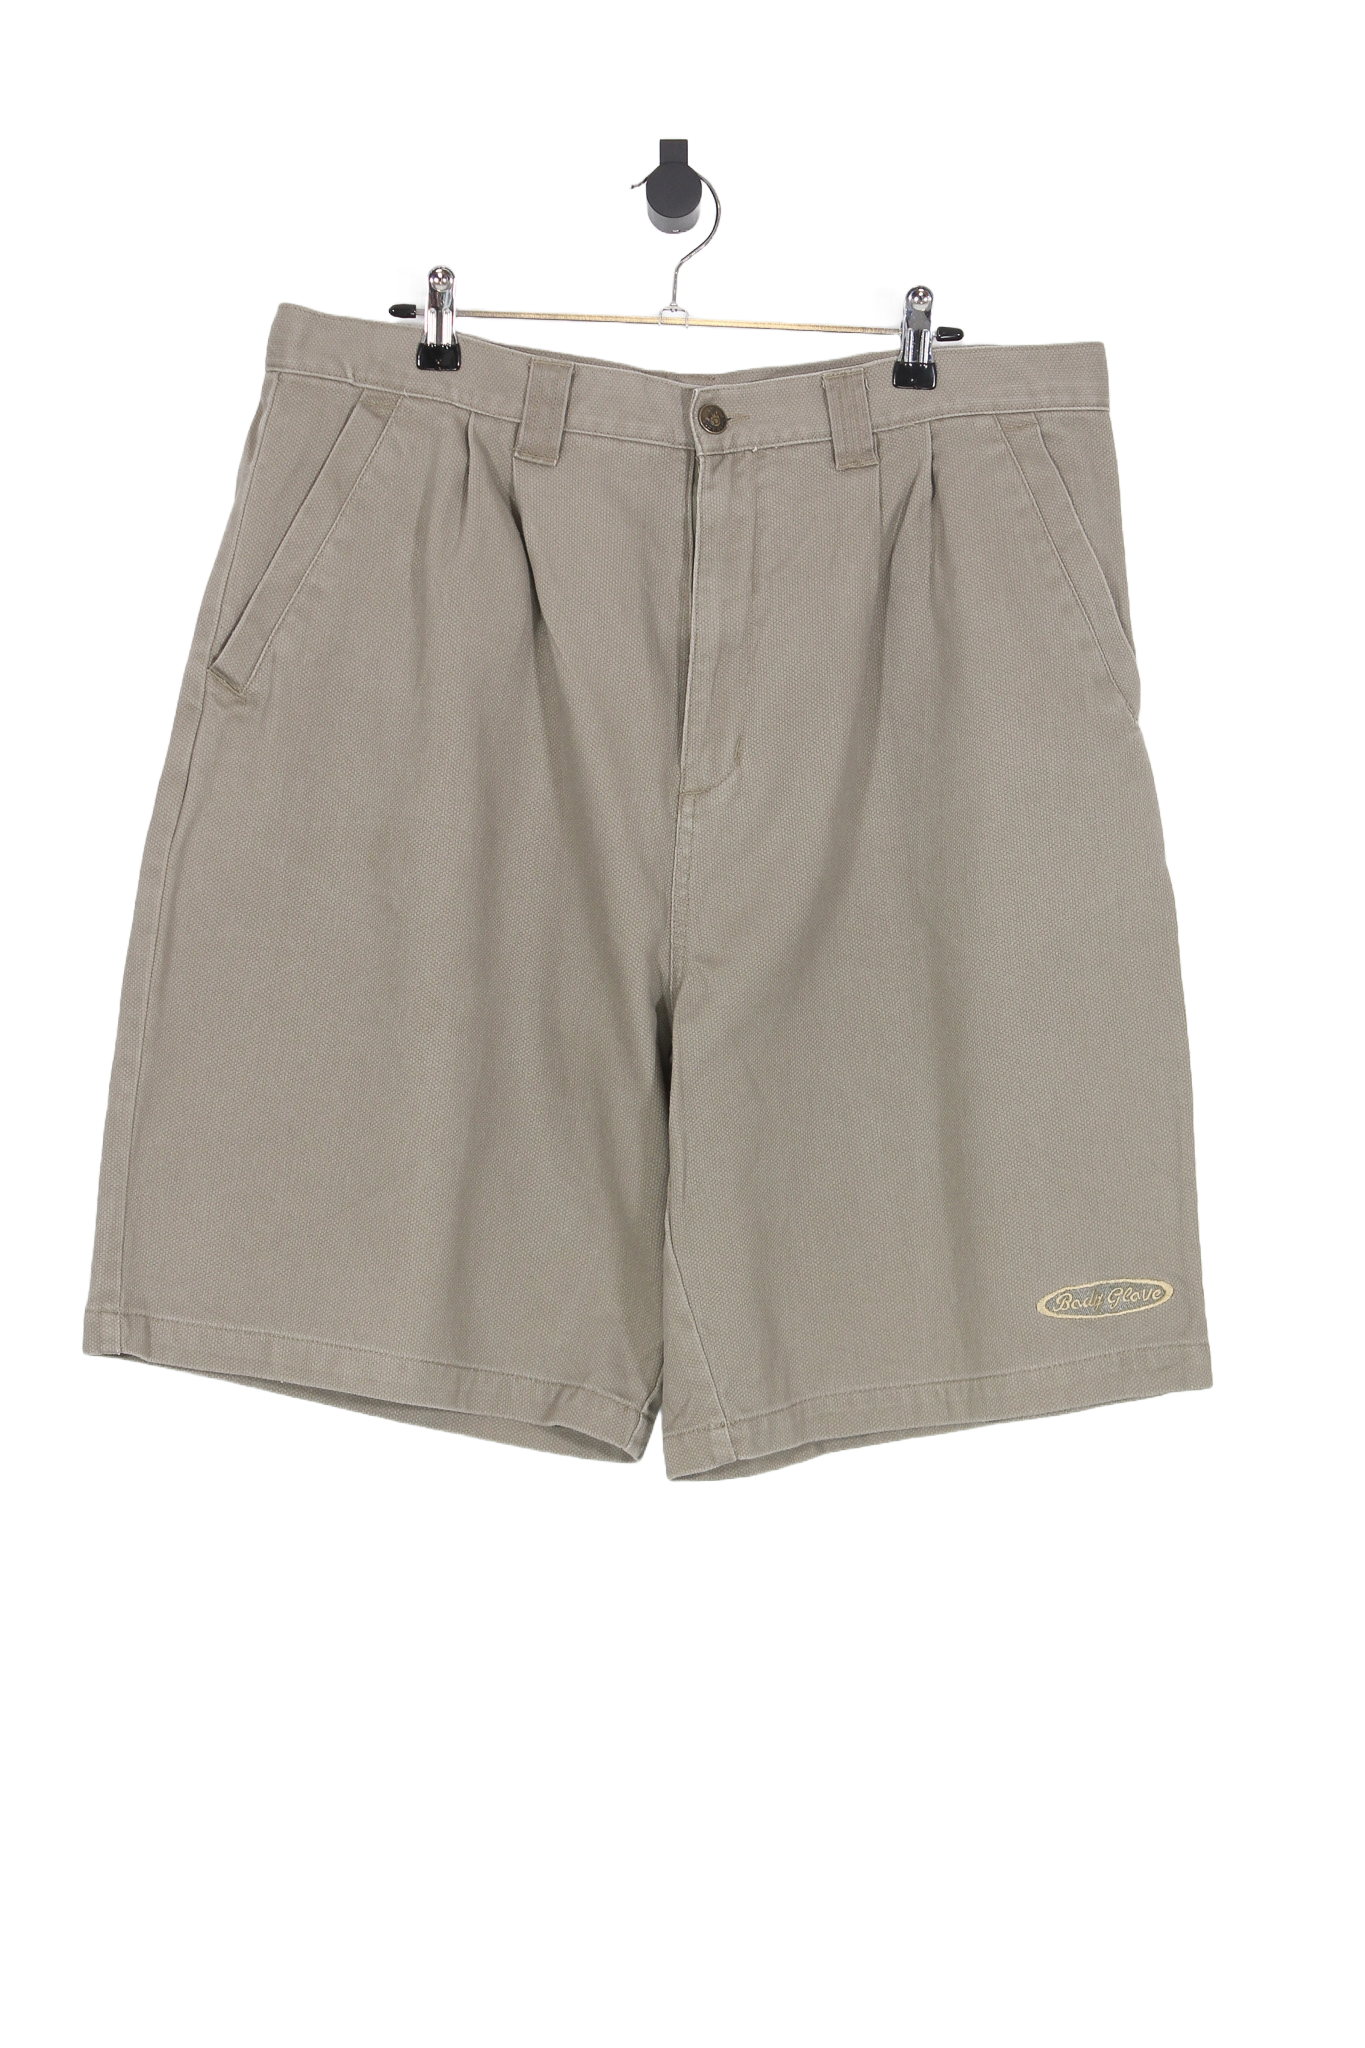 2000's Hang Ten Shorts - 36